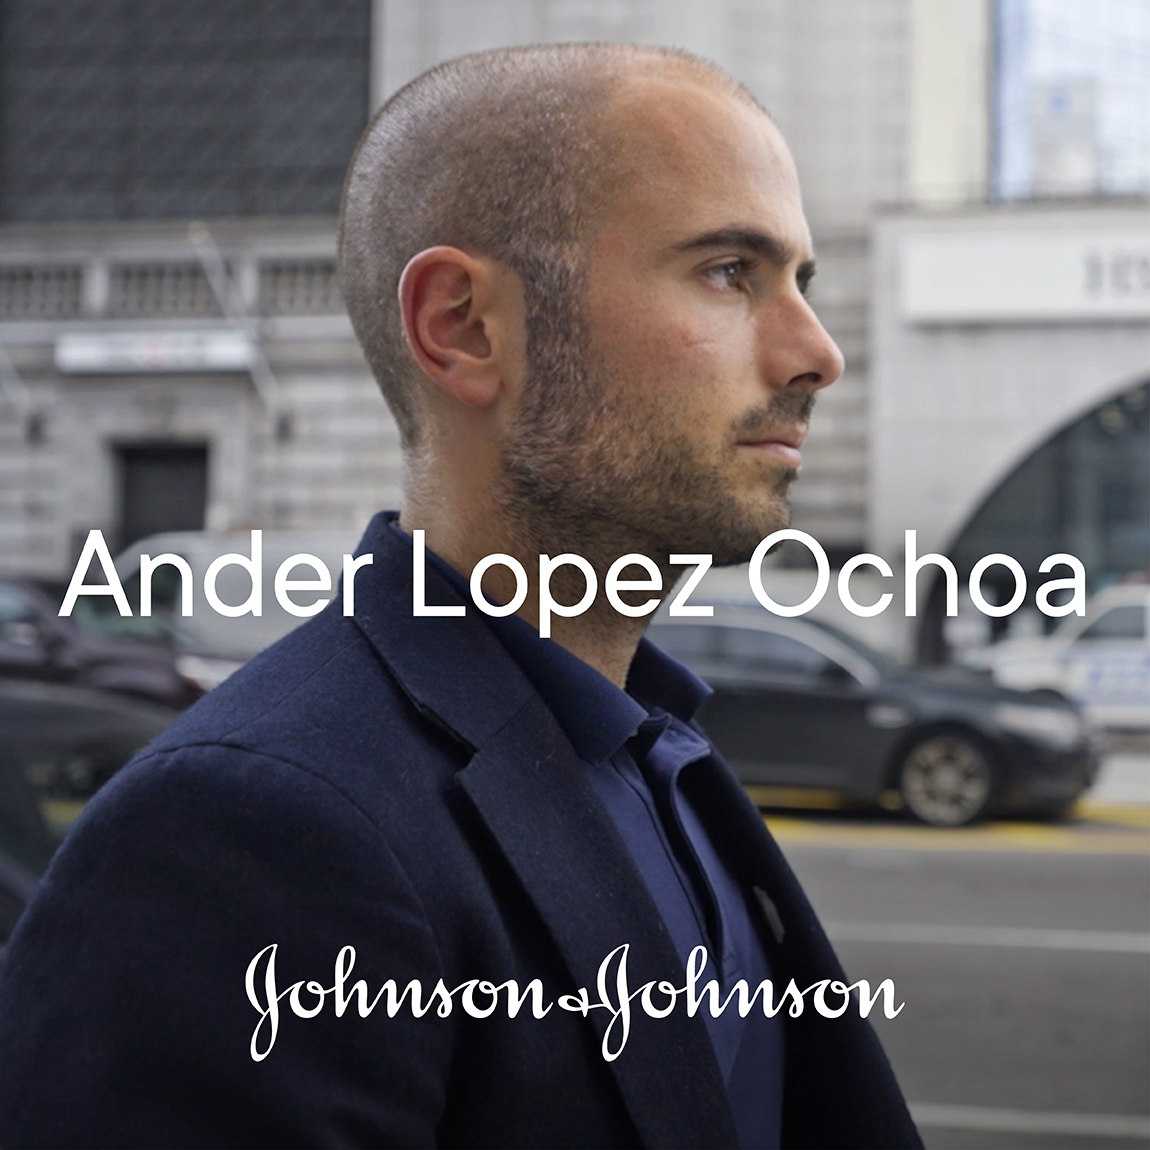 Ander Lopez Ochoa